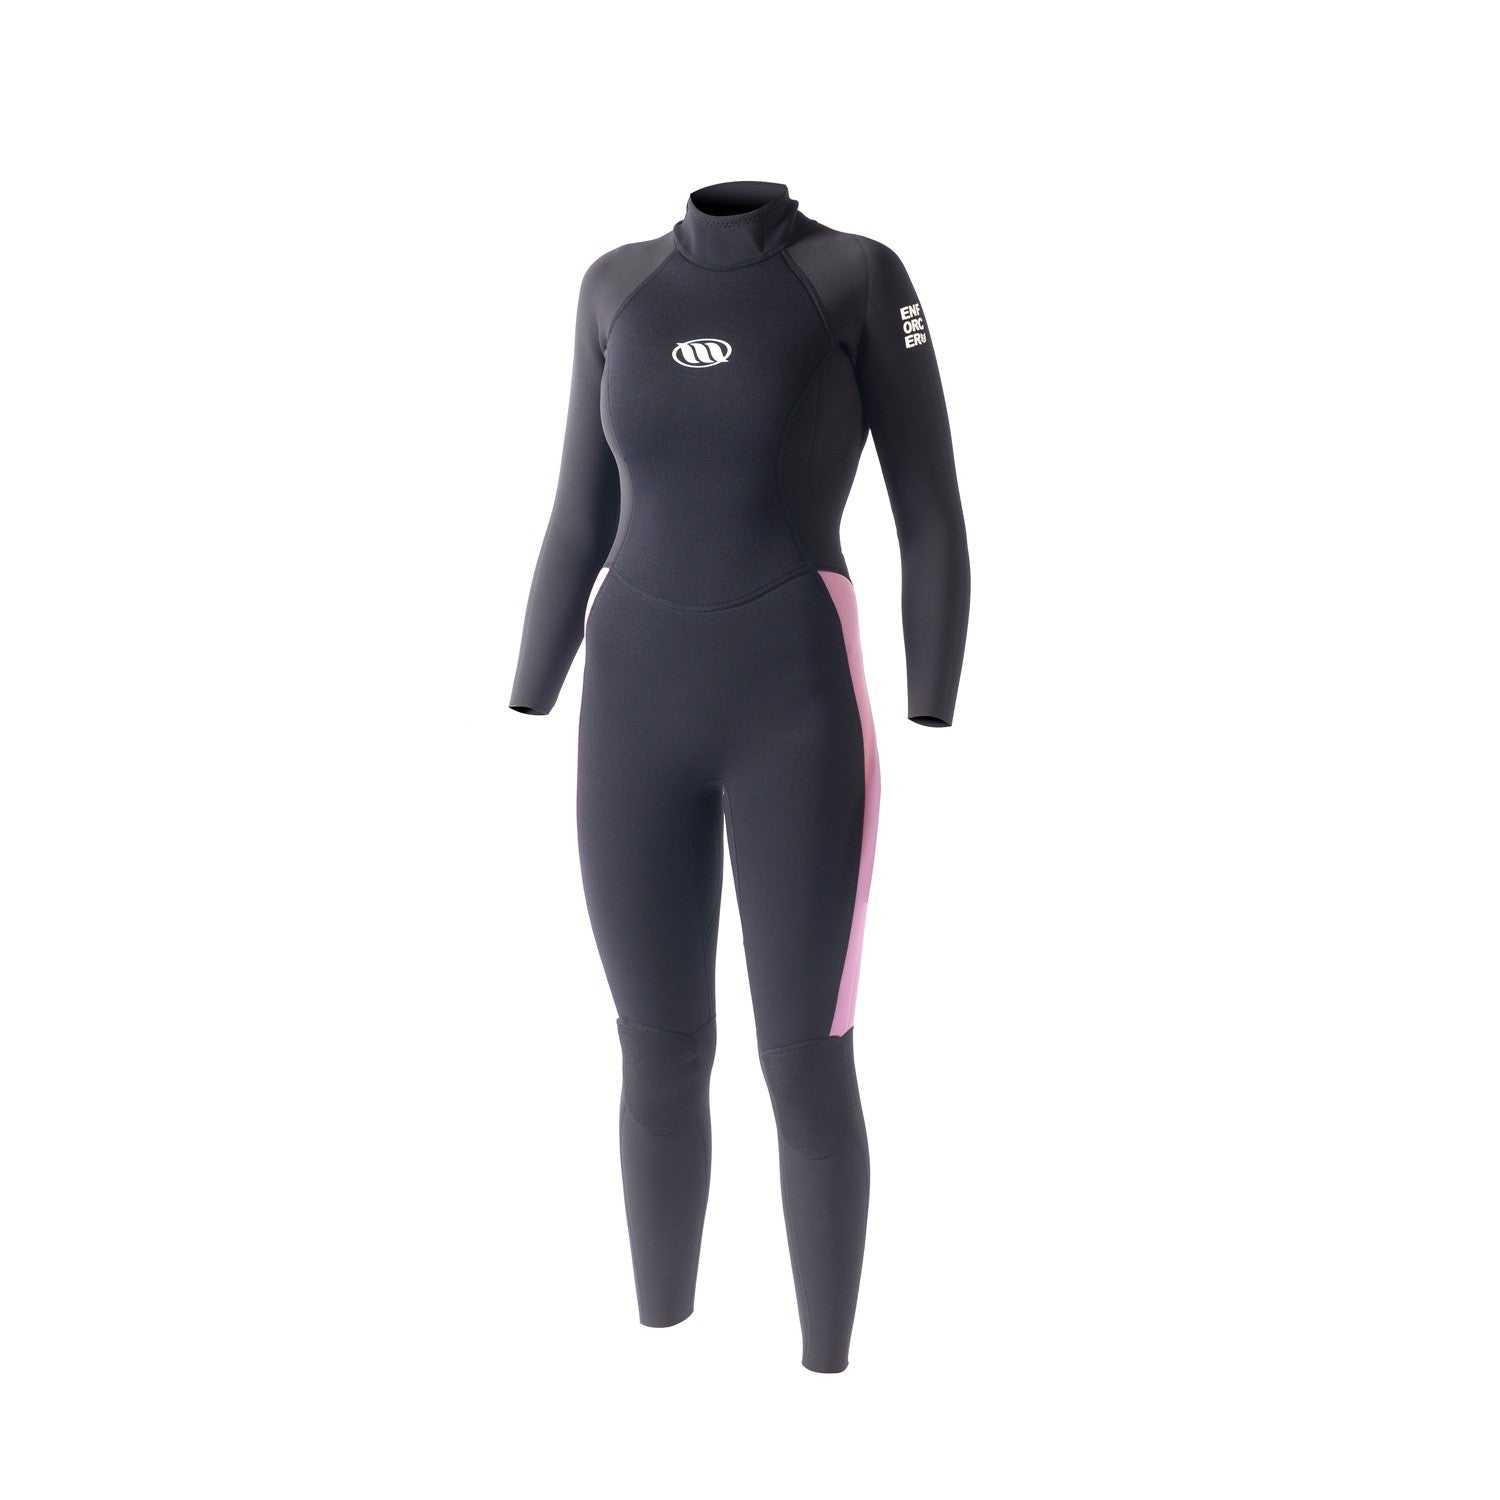 WEST - Combinaison surf Femme - Enforcer Lady 3/2mm back zip - Black / Pink